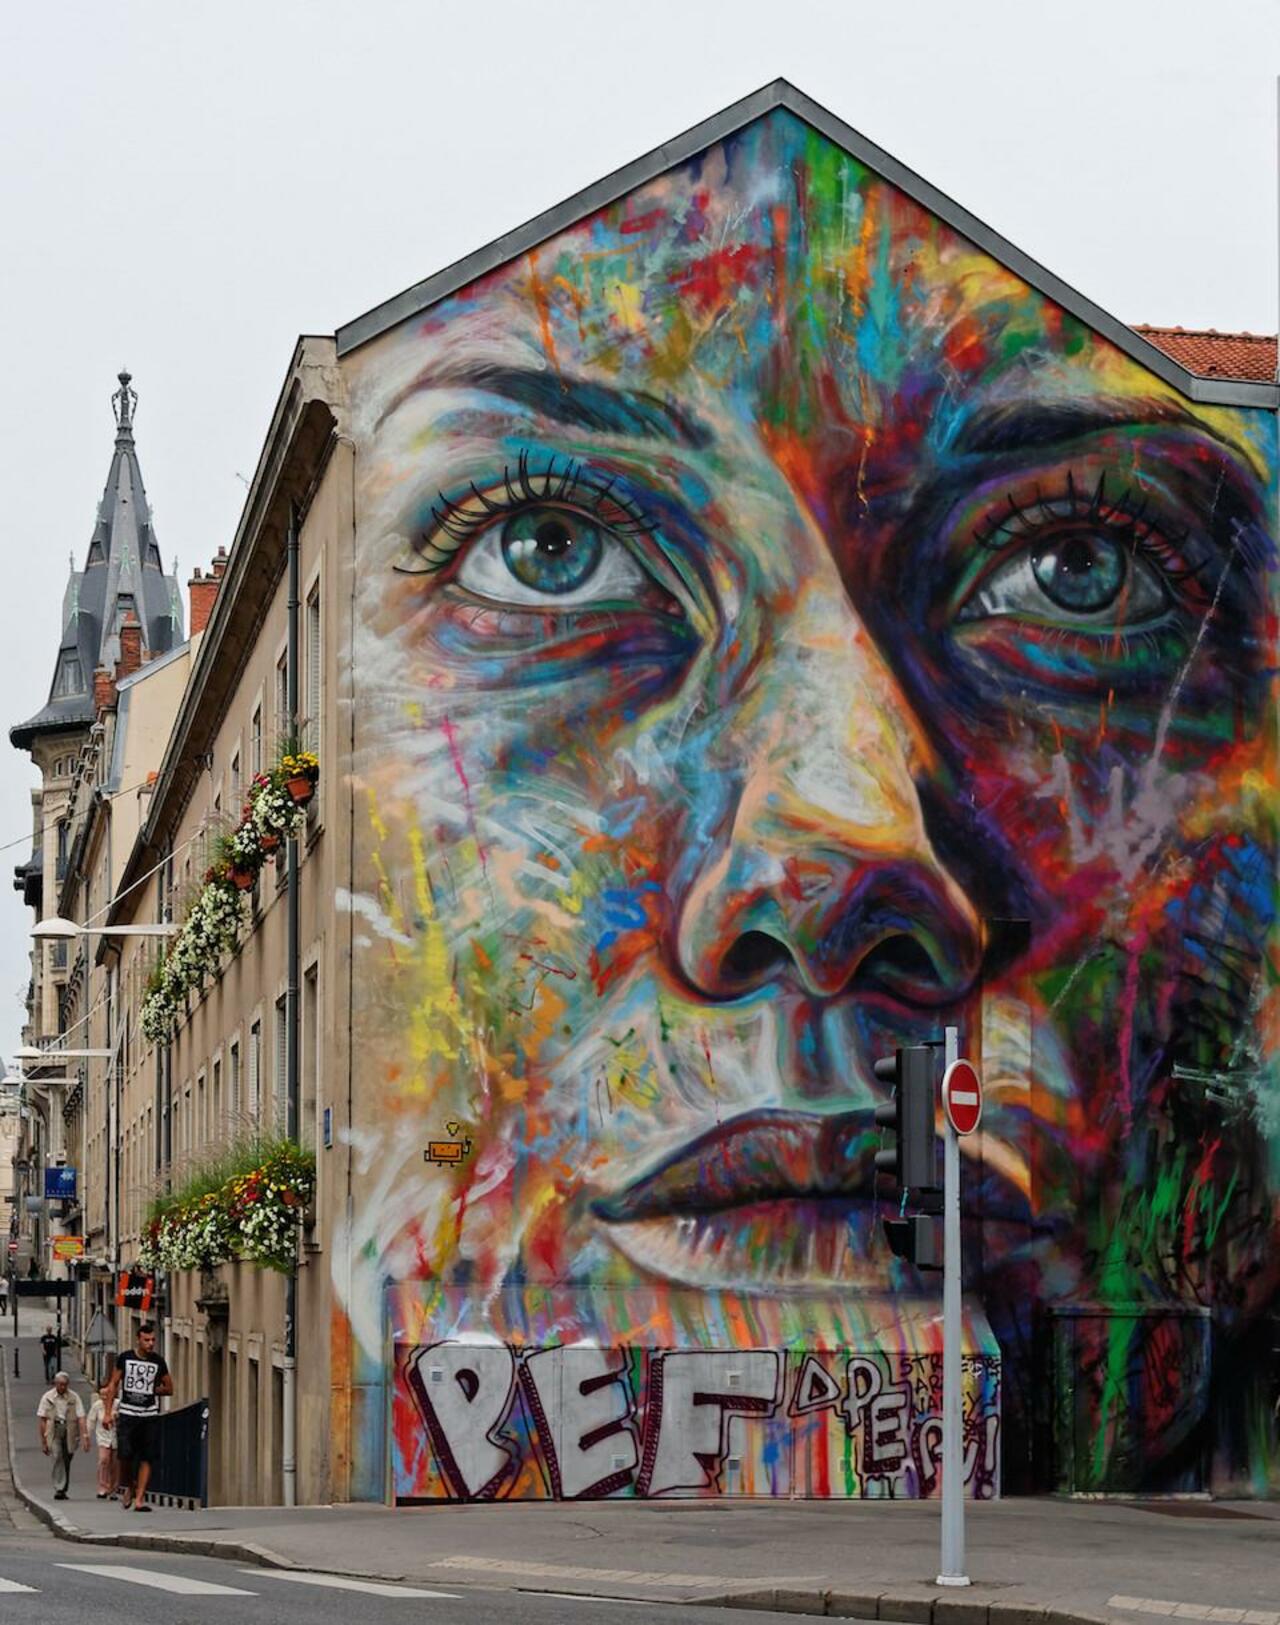 Street Art by David Walker in Lorraine, France. #StreetArt #Graffiti #Mural http://t.co/WJc5AFYIR3